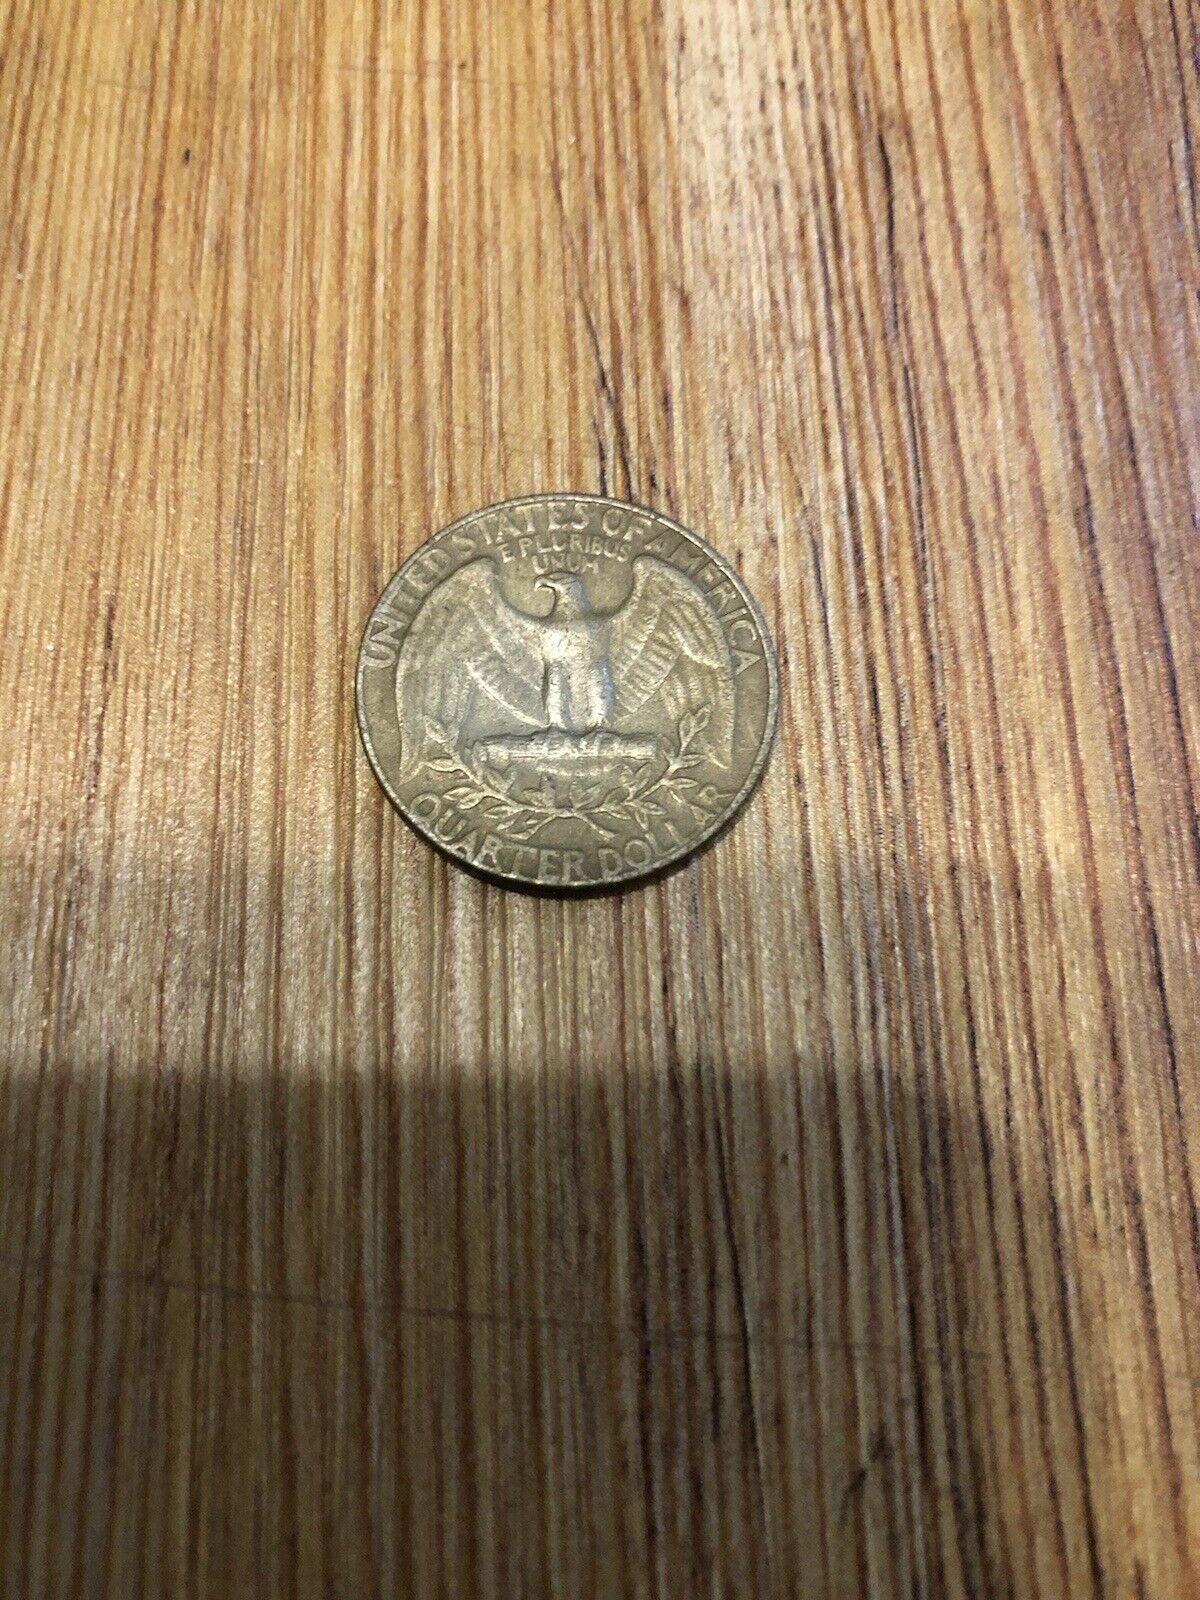 Vintage Quarter Dollar 1974 Washington Coin Rare